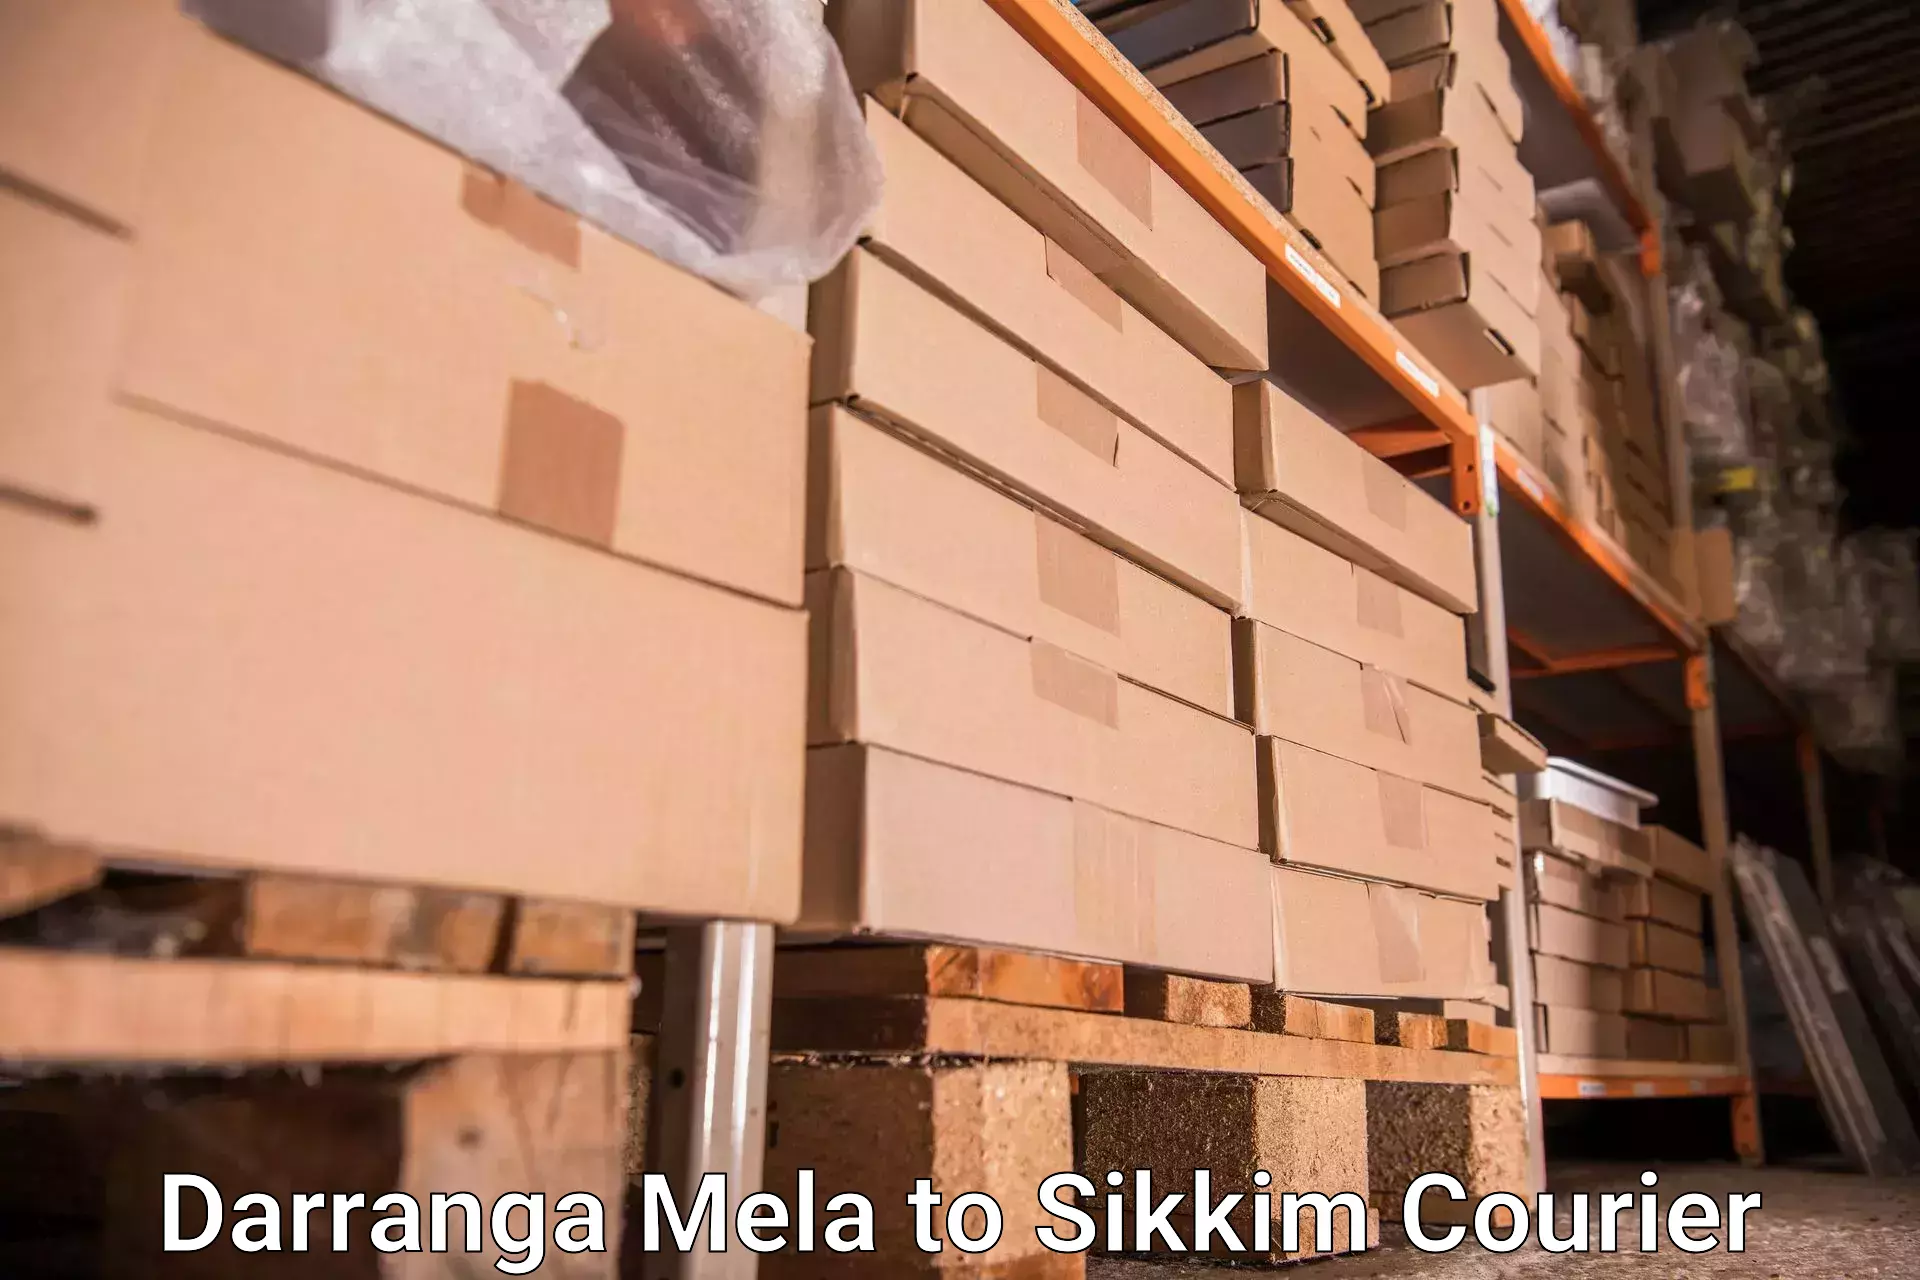 Baggage courier pricing Darranga Mela to Gangtok